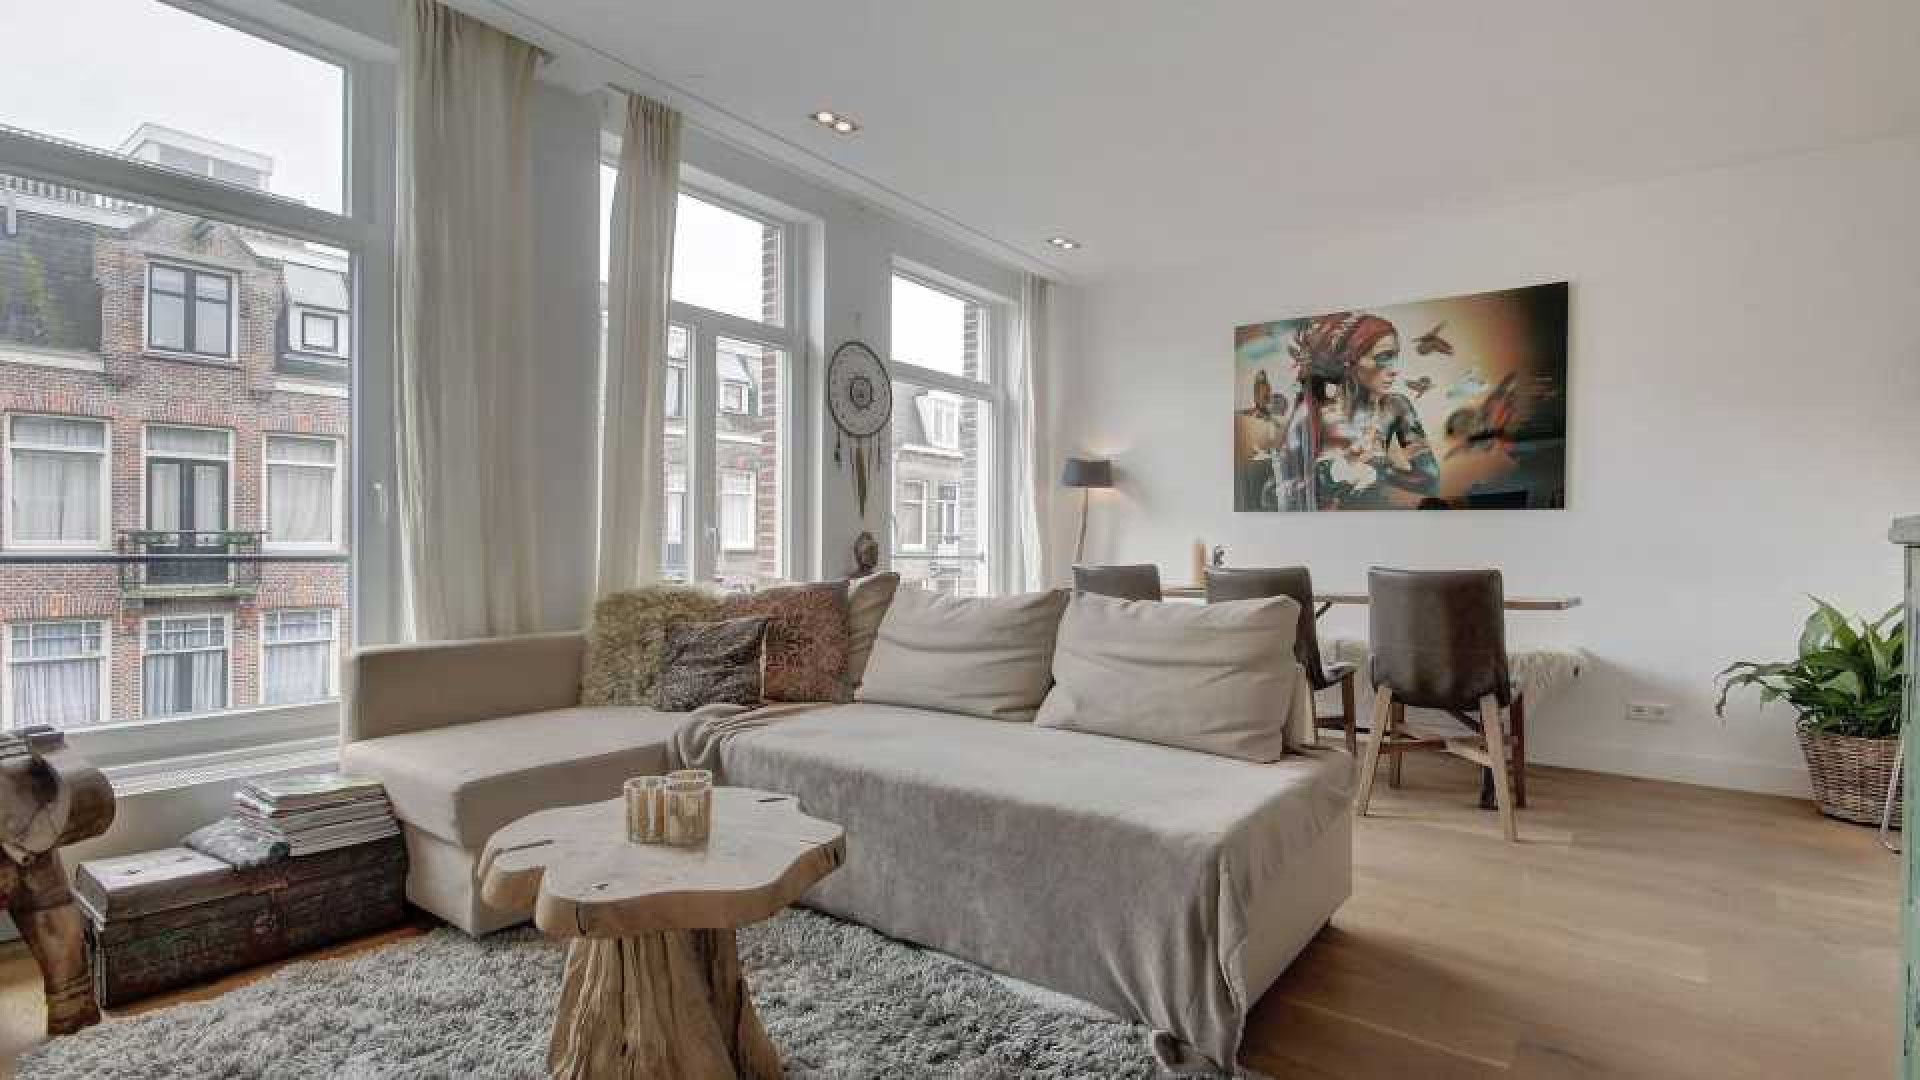 John van 't Schip maakt financiele klapper met zijn appartement in de Amsterdamse 